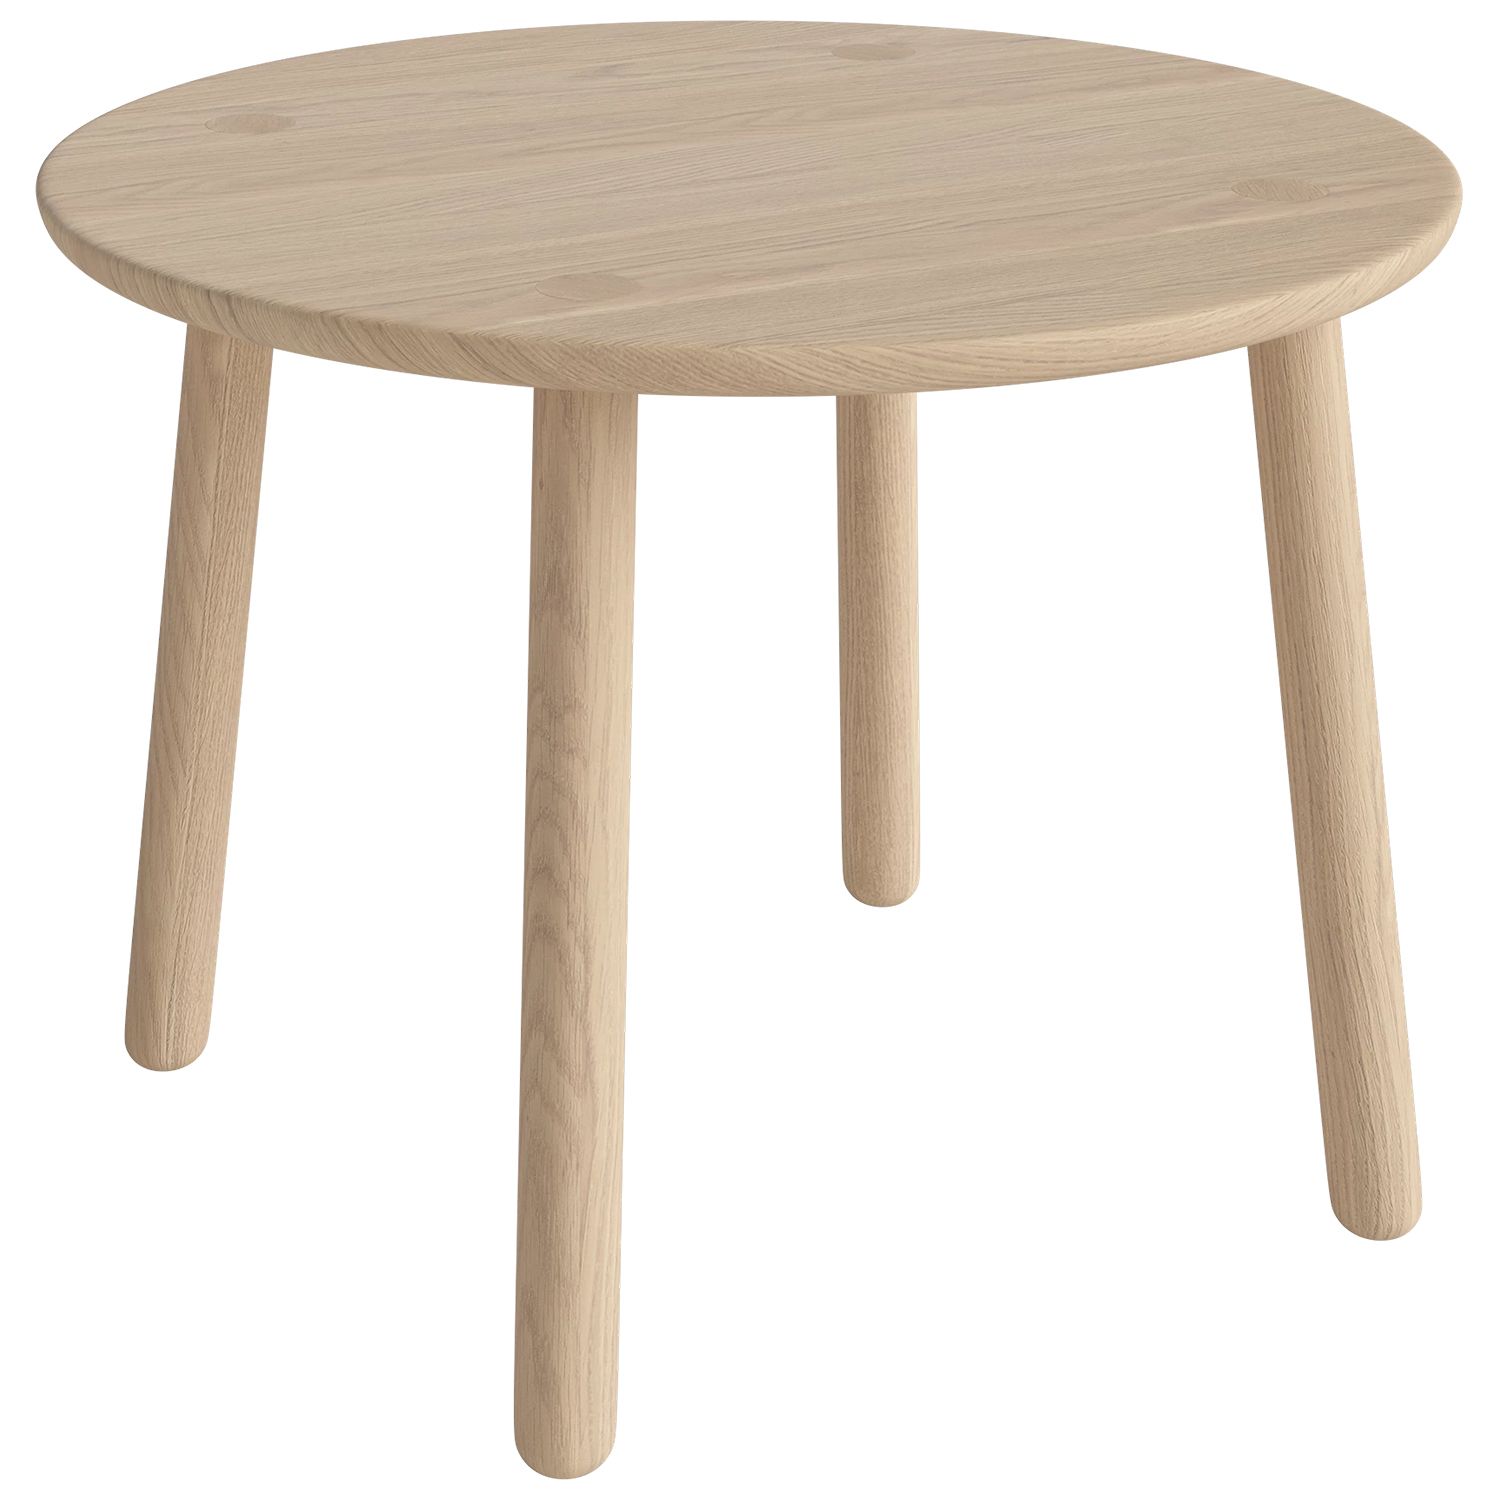 Bolia designové konferenční stoly Forest Coffee Table Round - DESIGNPROPAGANDA